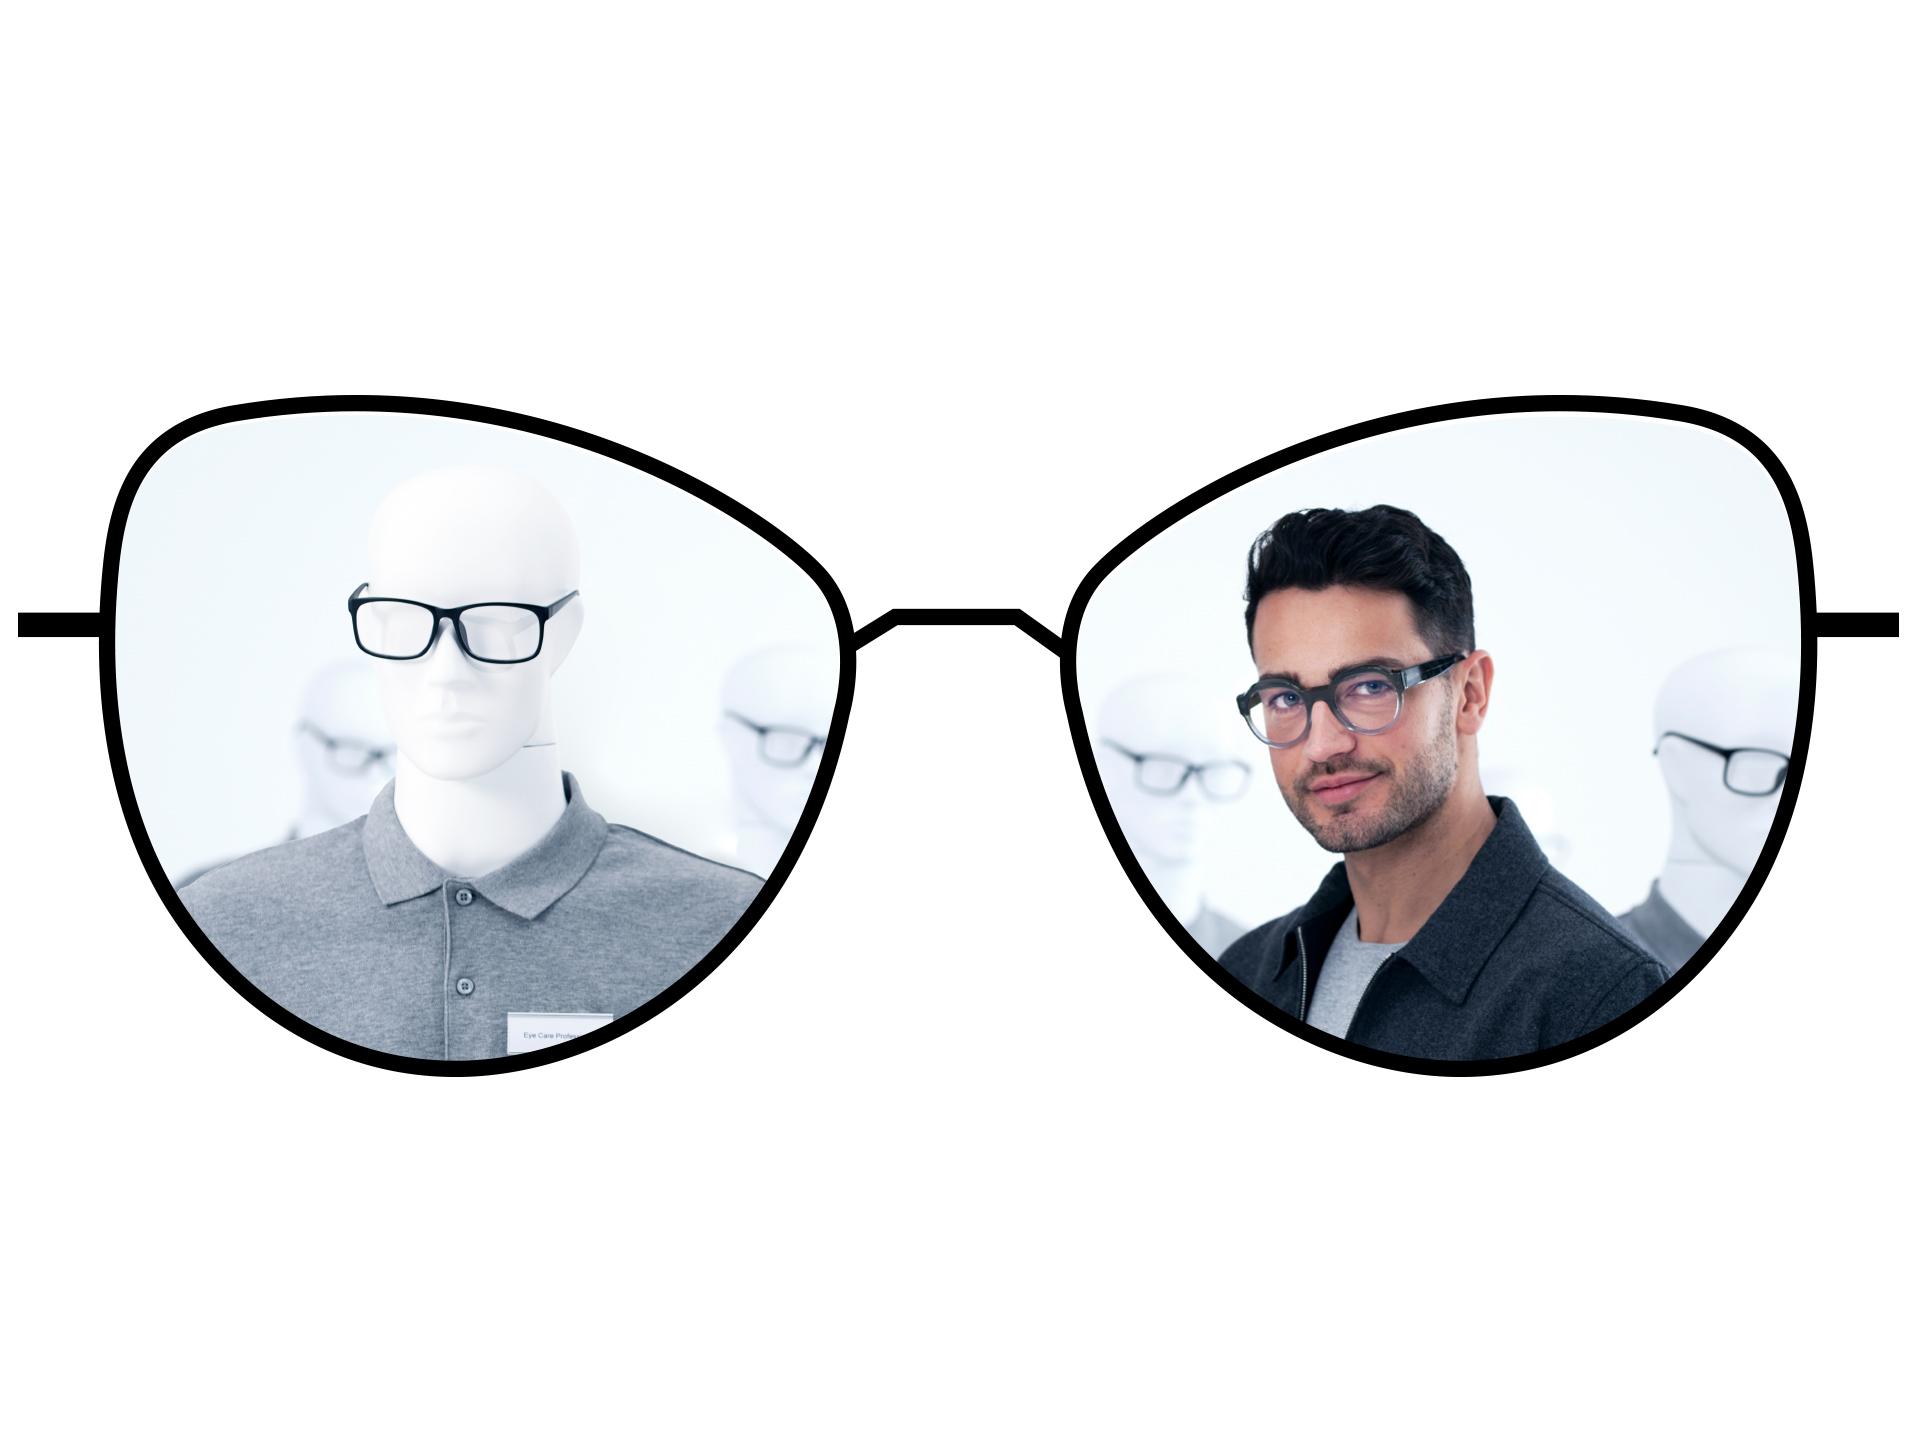 Ilustração de óculos mostrando as zonas embaçadas das lentes de visão simples tradicionais em comparação com as amplas zonas nítidas das lentes de visão simples ZEISS ClearView